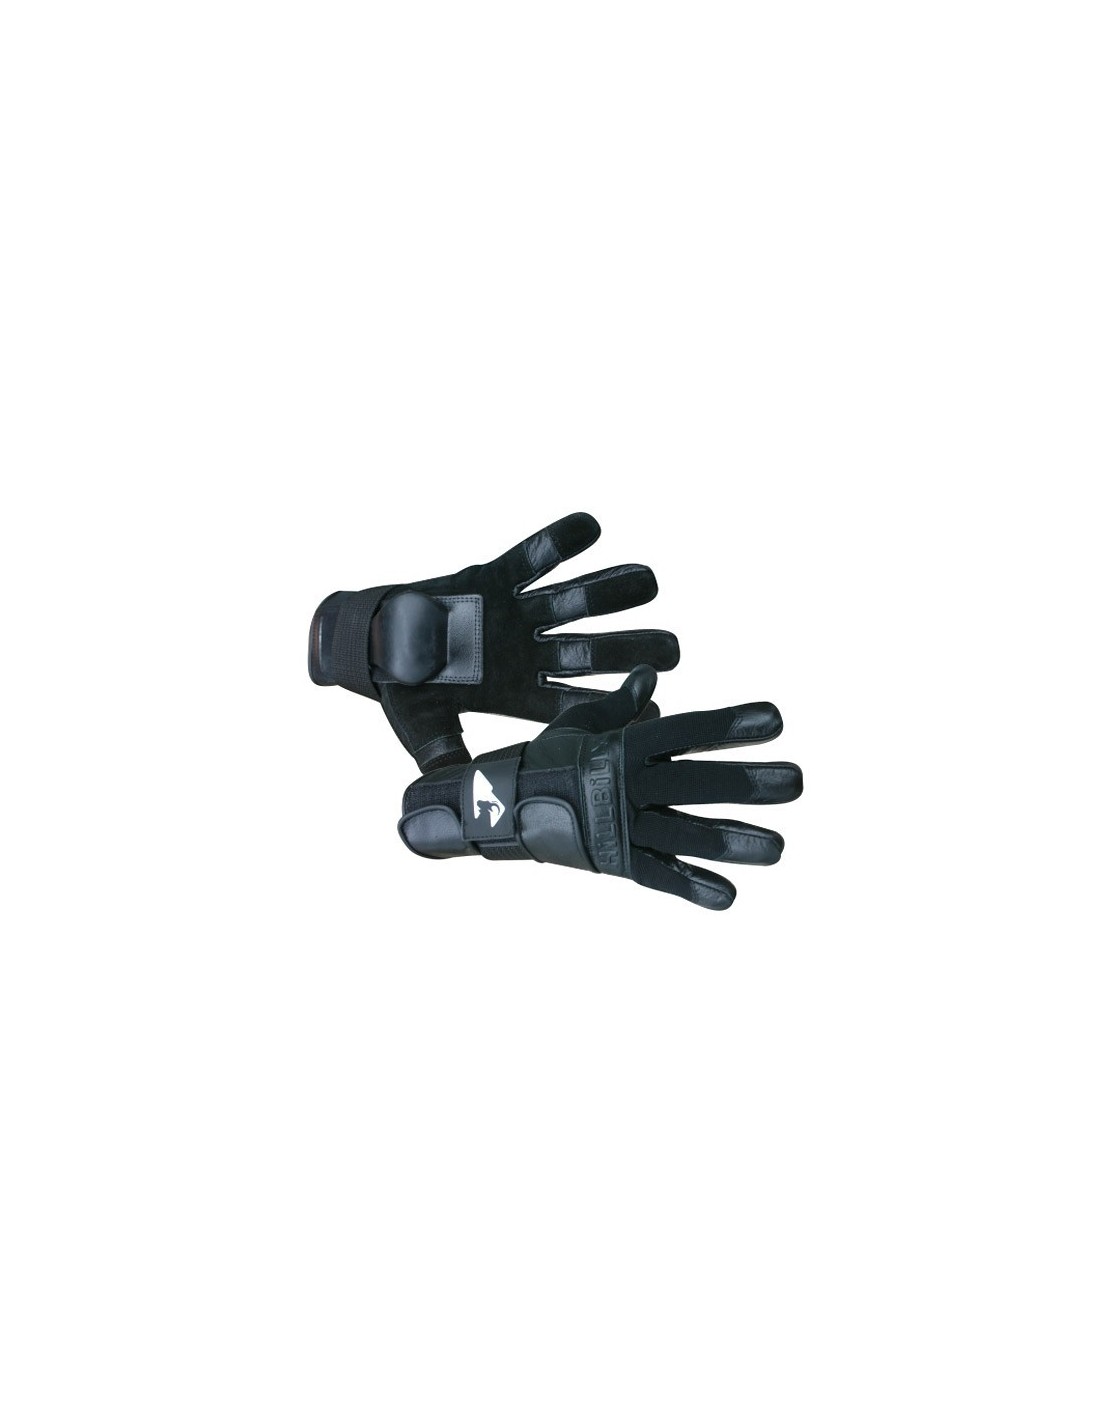 Hillbilly full finger gloves - Body Protections